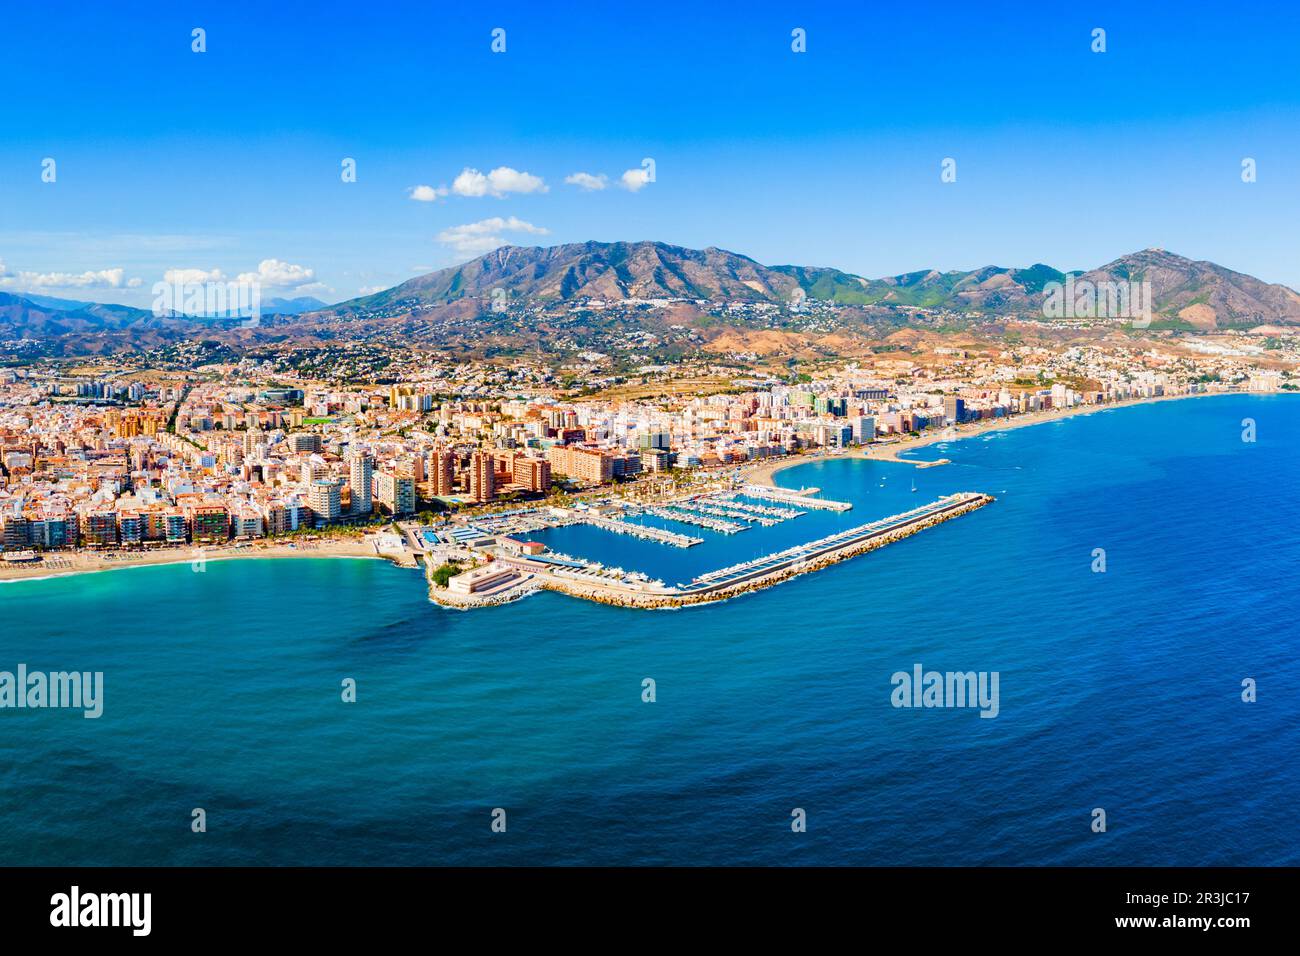 Vue panoramique sur la plage et la marina de Fuengirola. Fuengirola est une ville sur la Costa del sol dans la province de Malaga en Andalousie, Espagne. Banque D'Images